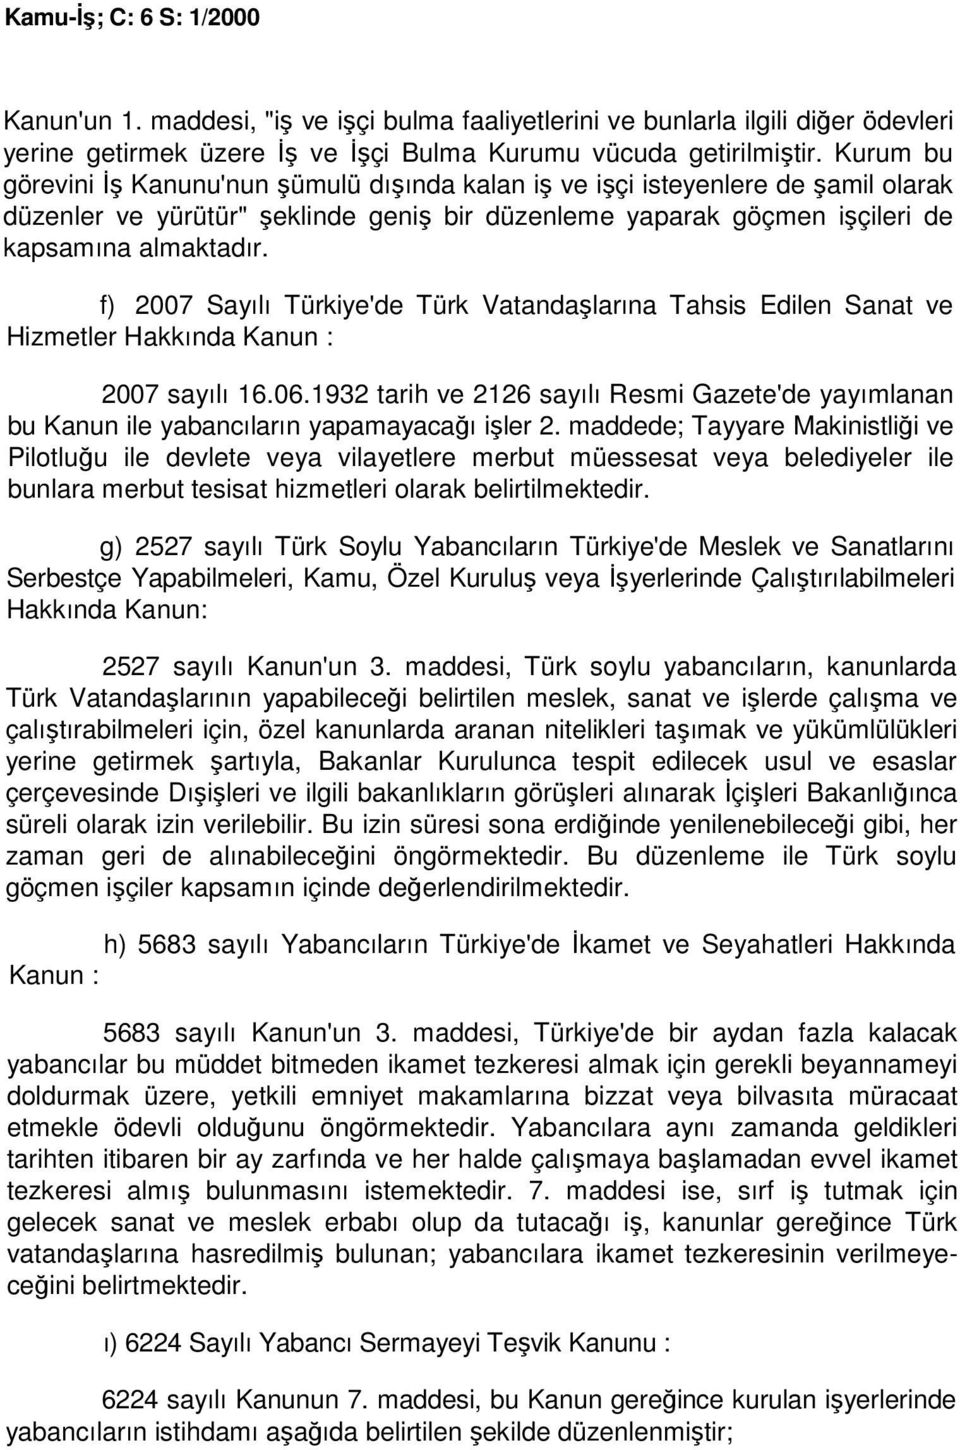 f) 2007 Sayılı Türkiye'de Türk Vatandaşlarına Tahsis Edilen Sanat ve Hizmetler Hakkında Kanun : 2007 sayılı 16.06.